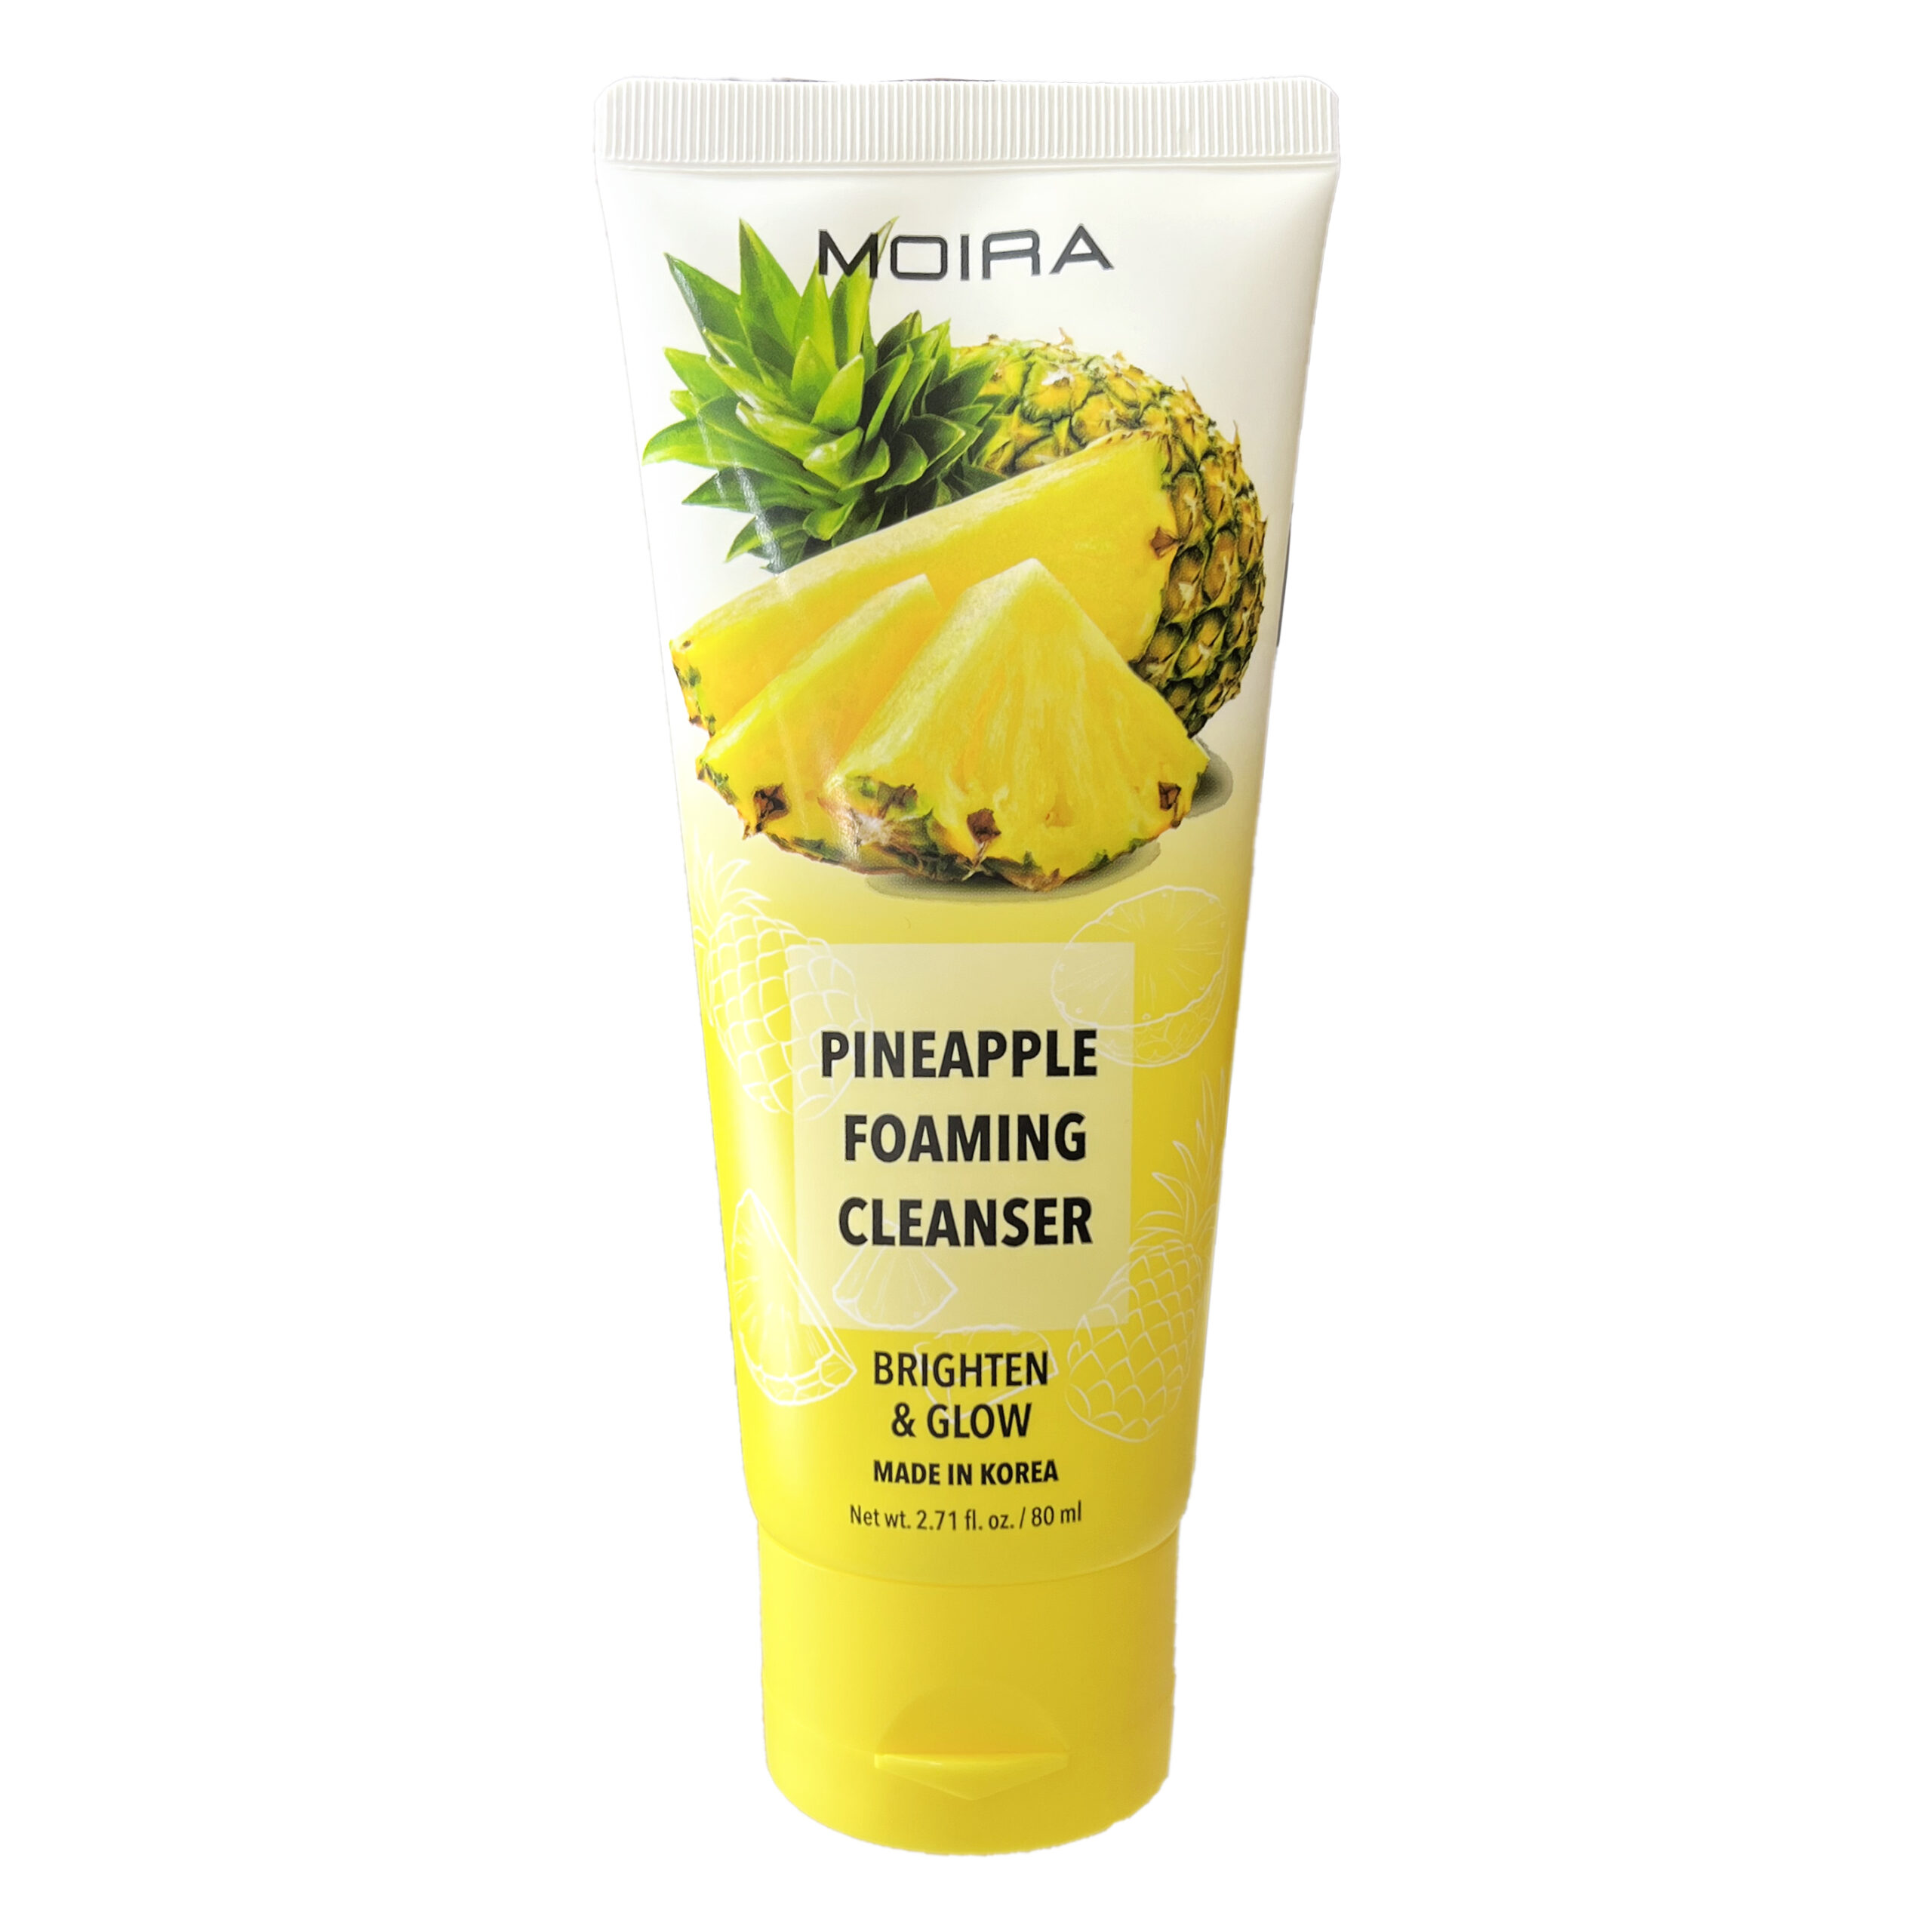 MOIRA Pineapple Foaming Cleanser es una fórmula suave adecuada para todo tipo de piel. Con una infusión de extracto de piña, este limpiador ayuda a crear un brillo saludable e ilumina la tez.